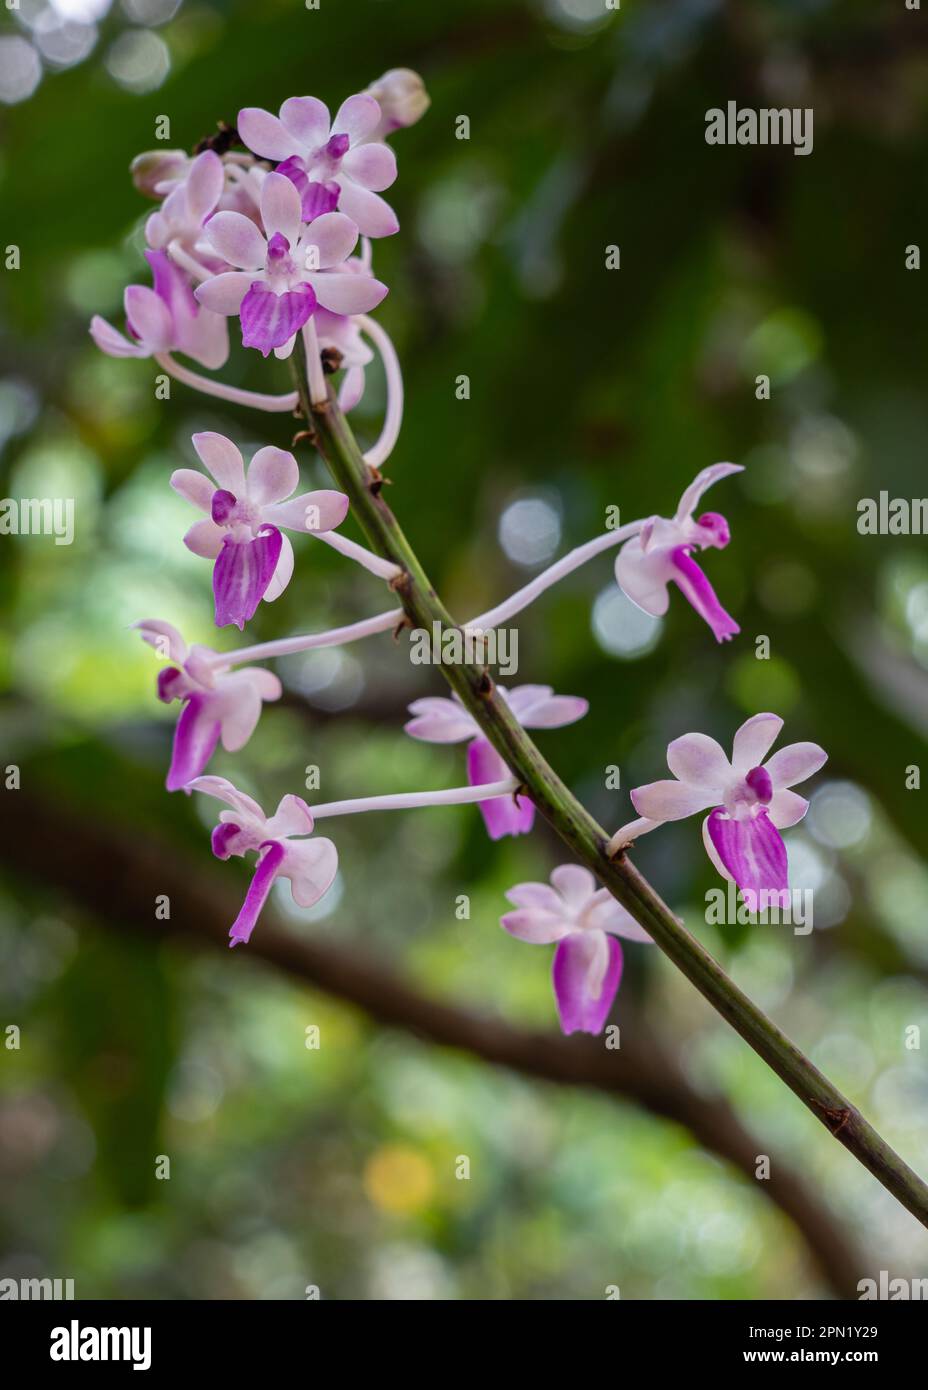 Gros plan vue verticale de l'espèce épiphytique d'orchidées seidenfadenia mitrata violet fleurs roses et blanches fleurir à l'extérieur dans le jardin tropical Banque D'Images